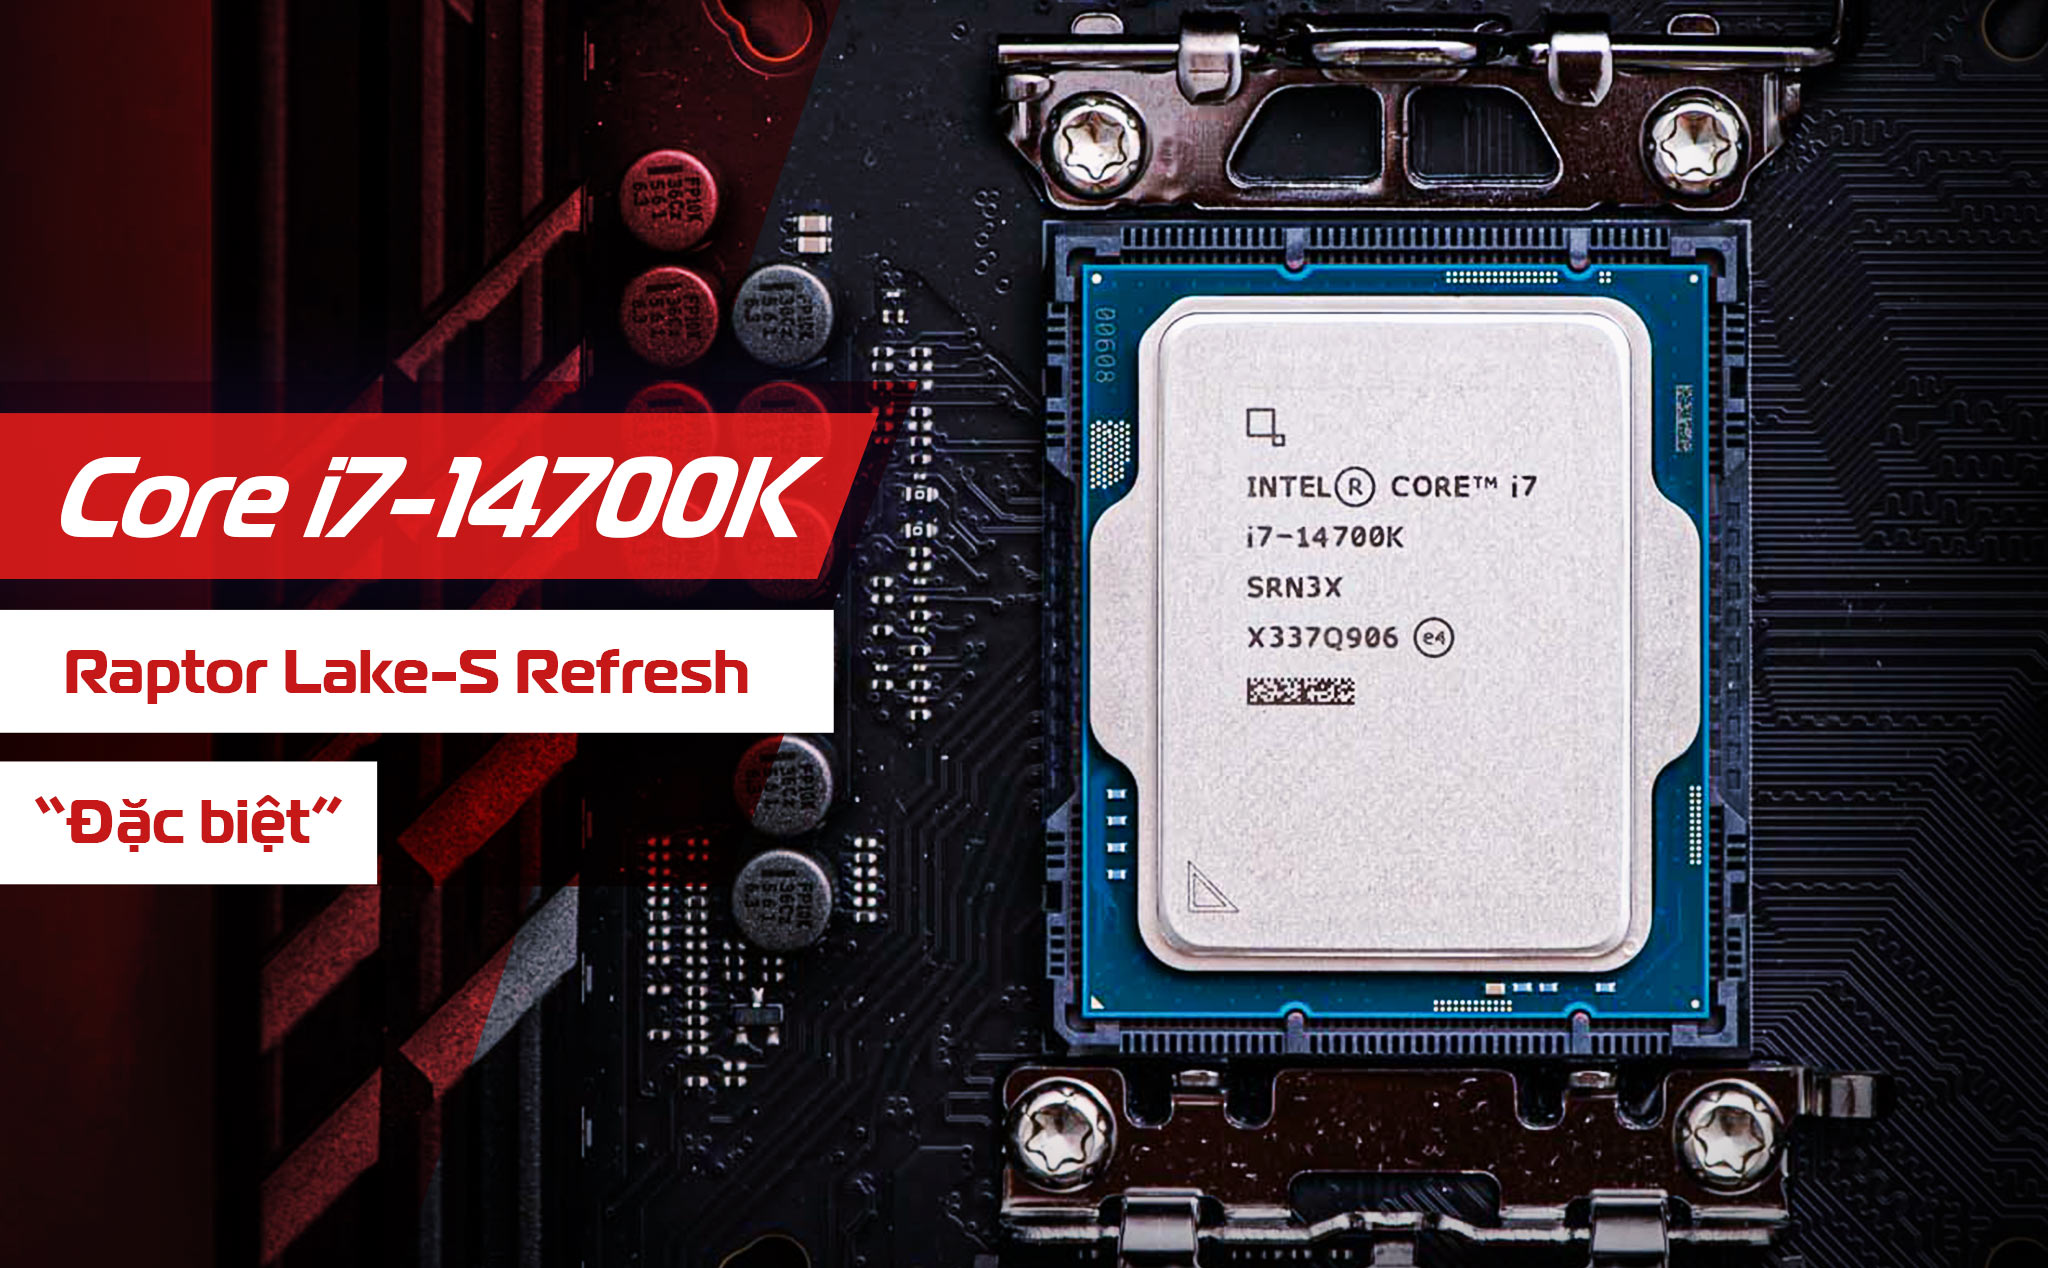 Thử nghiệm Intel Core i7-14700K - CPU Raptor Lake-S Refresh đặc biệt nhất